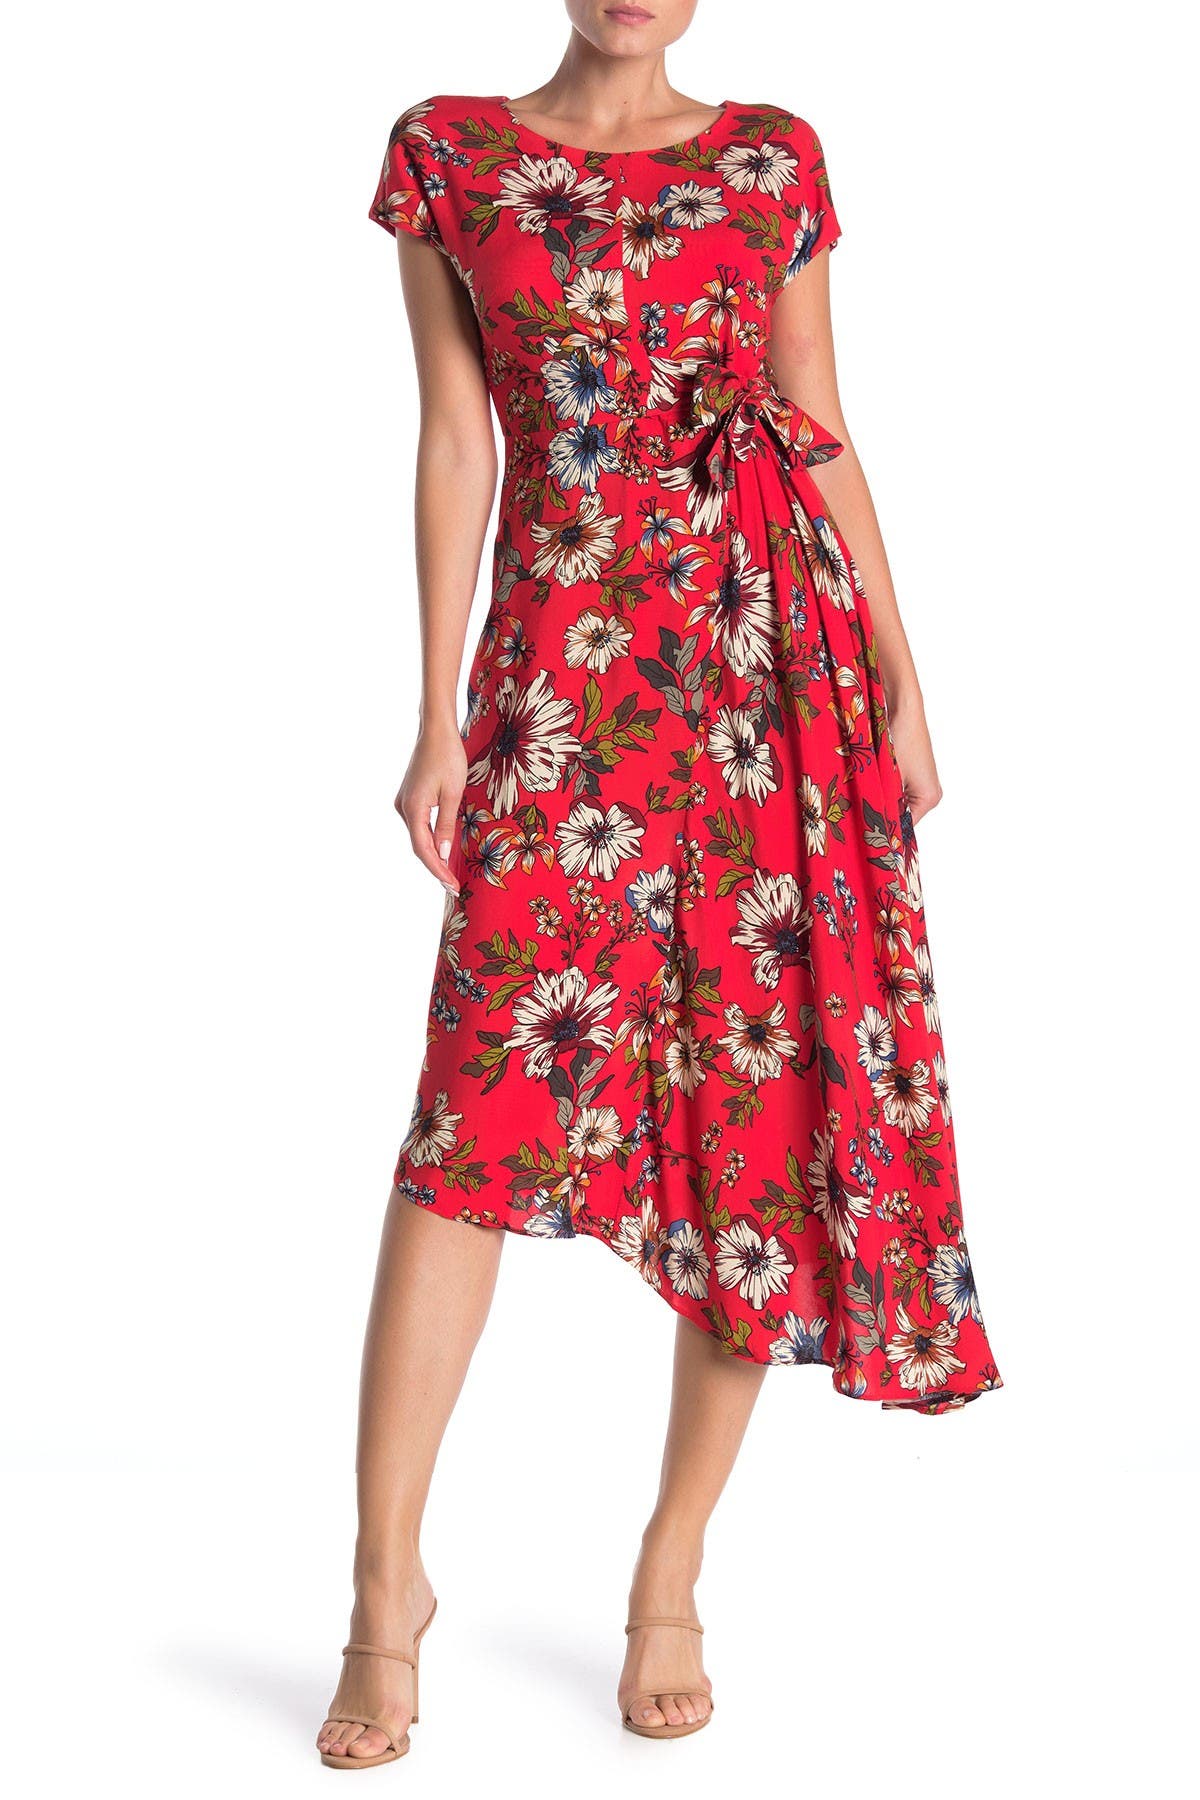 donna morgan floral dress